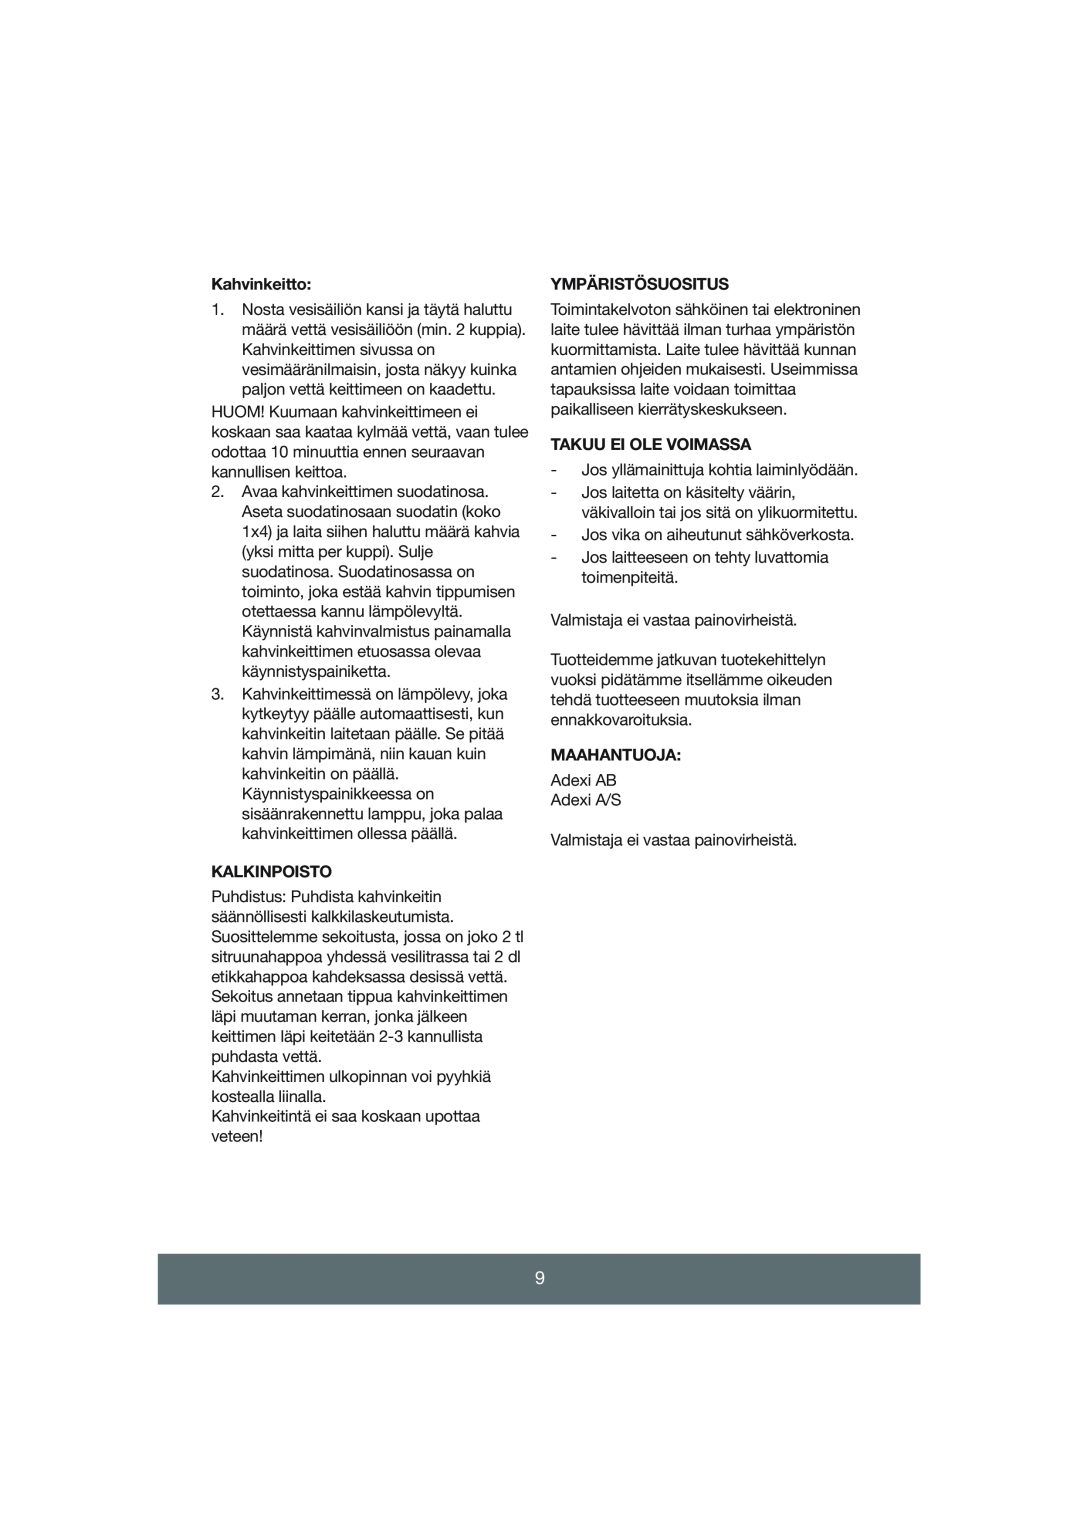 Butler 645-045 manual Kahvinkeitto, Kalkinpoisto, Ympäristösuositus, Takuu Ei Ole Voimassa, Maahantuoja 